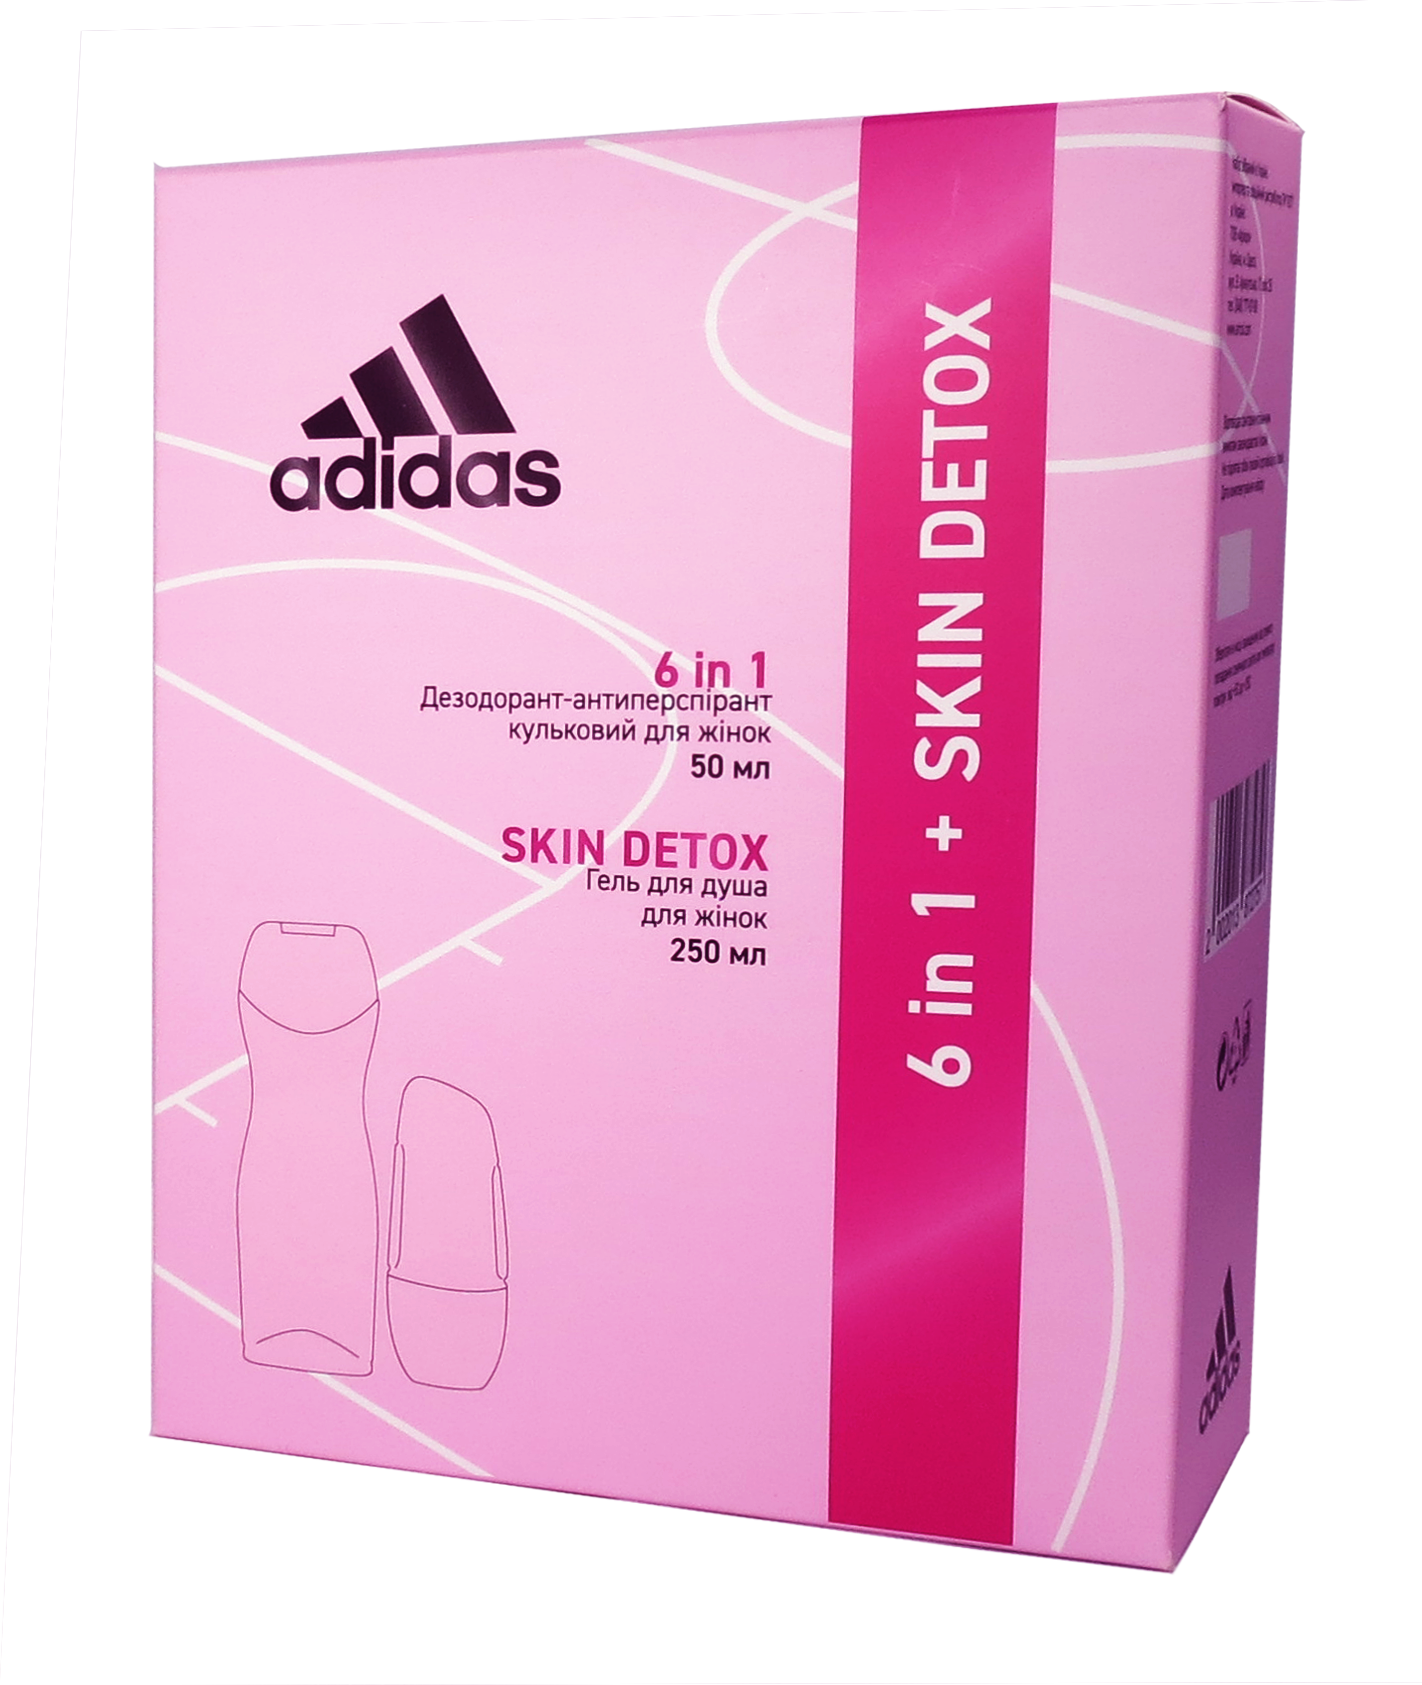 Набір для жінок Adidas 2020 Дезодорант-антиперспірант 6 в 1, 50 мл + Гель для душа Skin Detox, 250 мл - фото 2